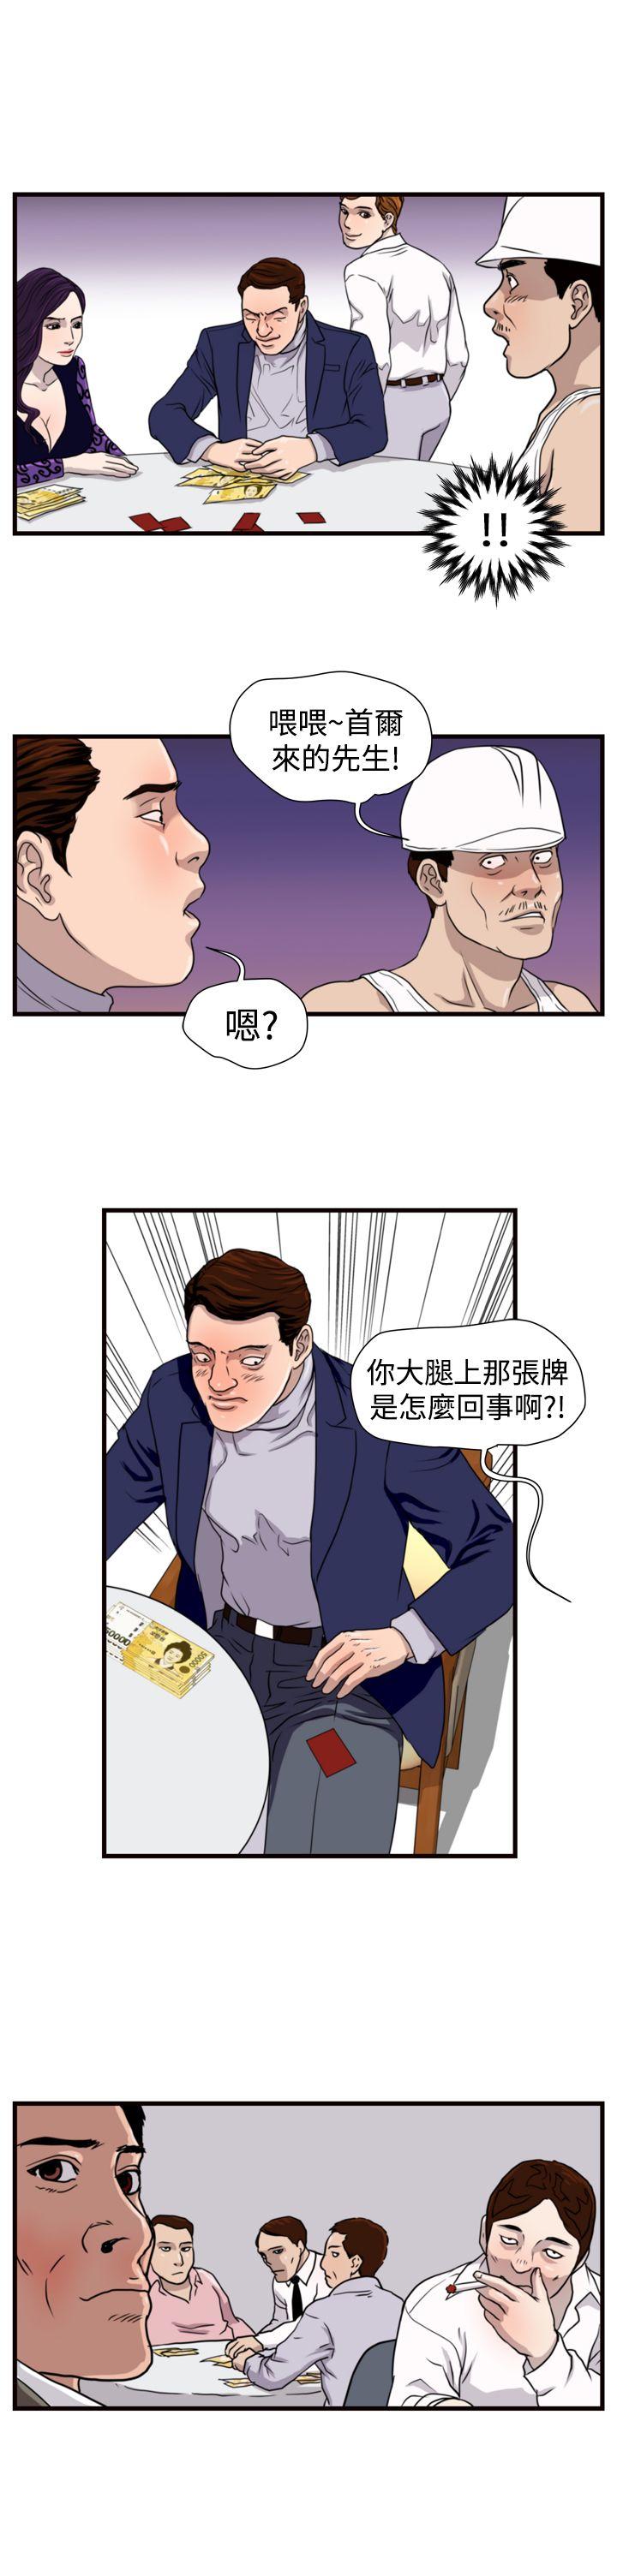 韩国污漫画 暴徒 第18话 18